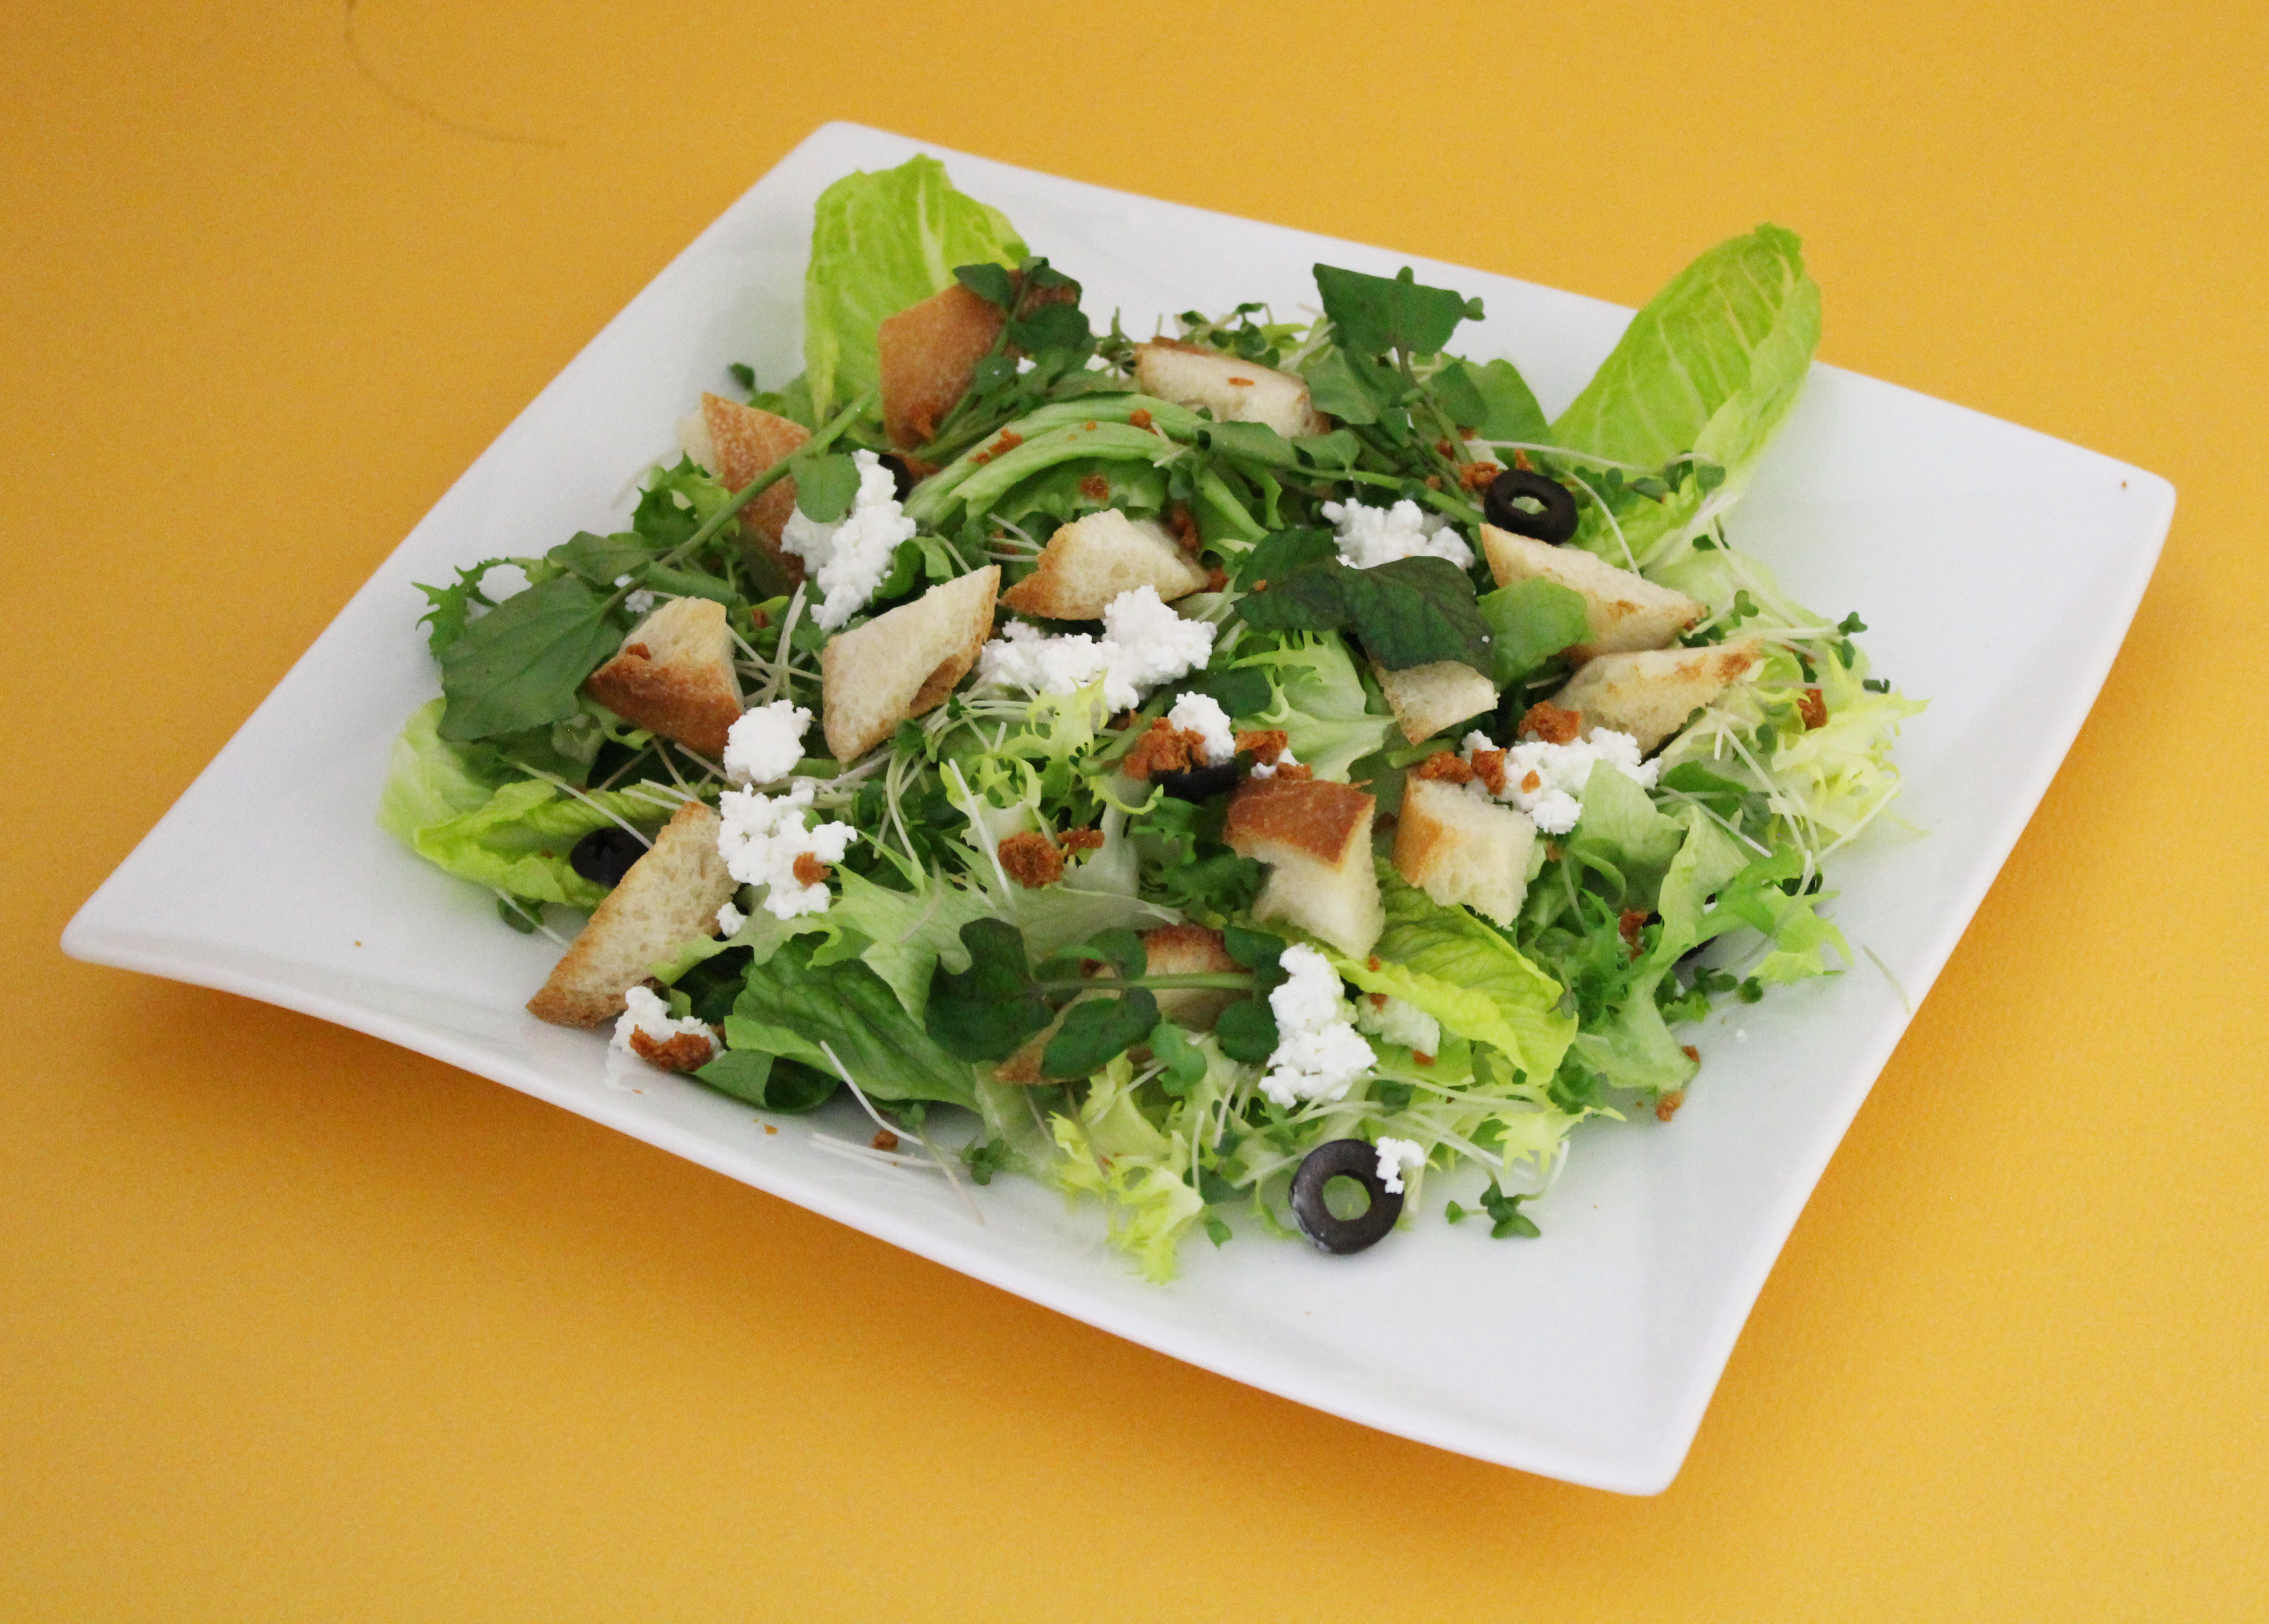 緑野菜のグリーンシーザーサラダ サラダカフェ サラダのレシピがいっぱい